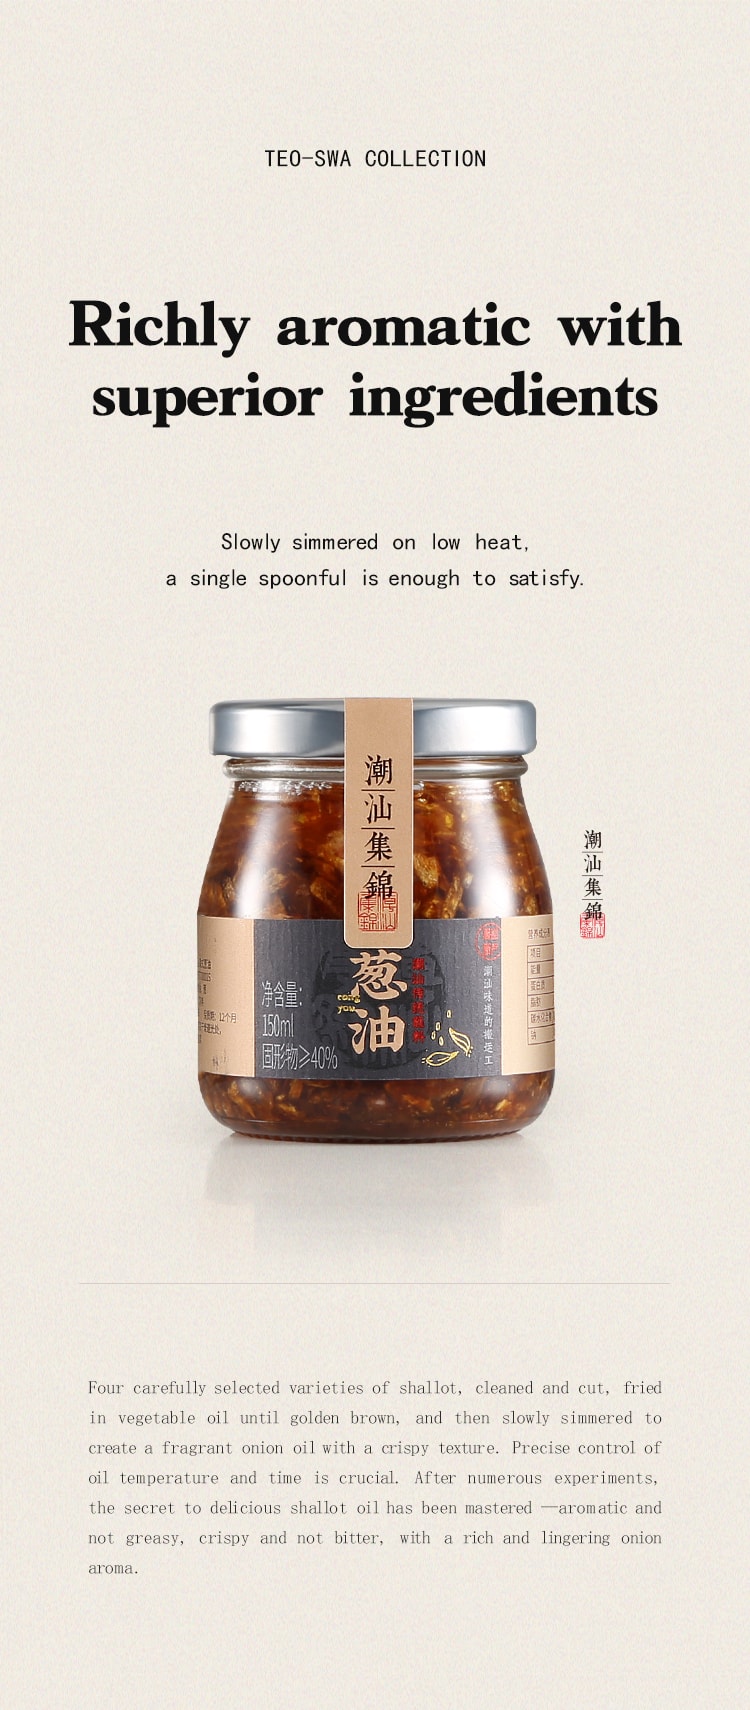 中國潮汕集錦 3件套裝 蒜頭油 蔥油 蒜頭酥 375克